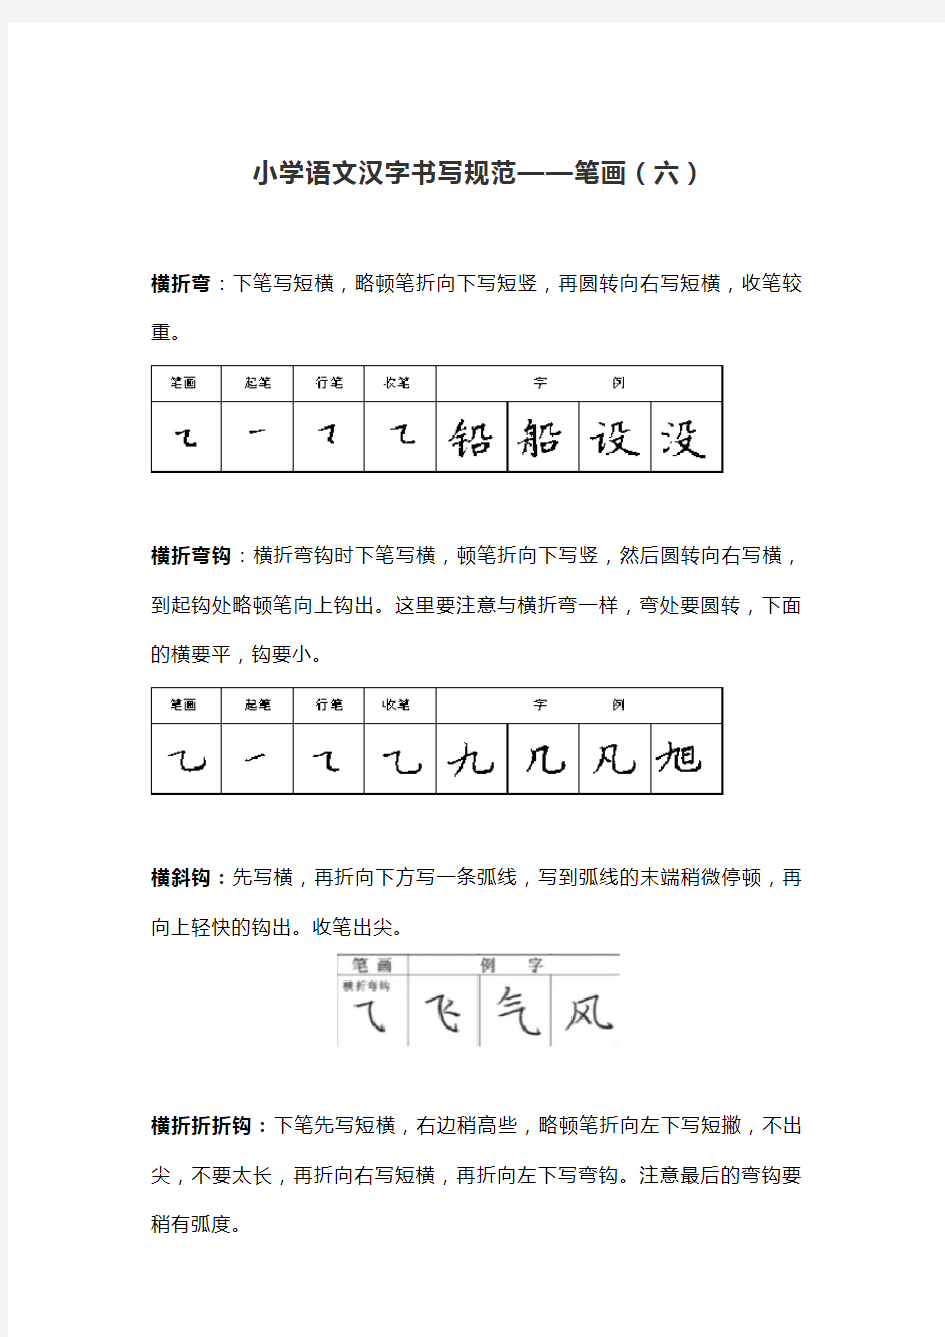 小学语文汉字书写规范笔画(六)